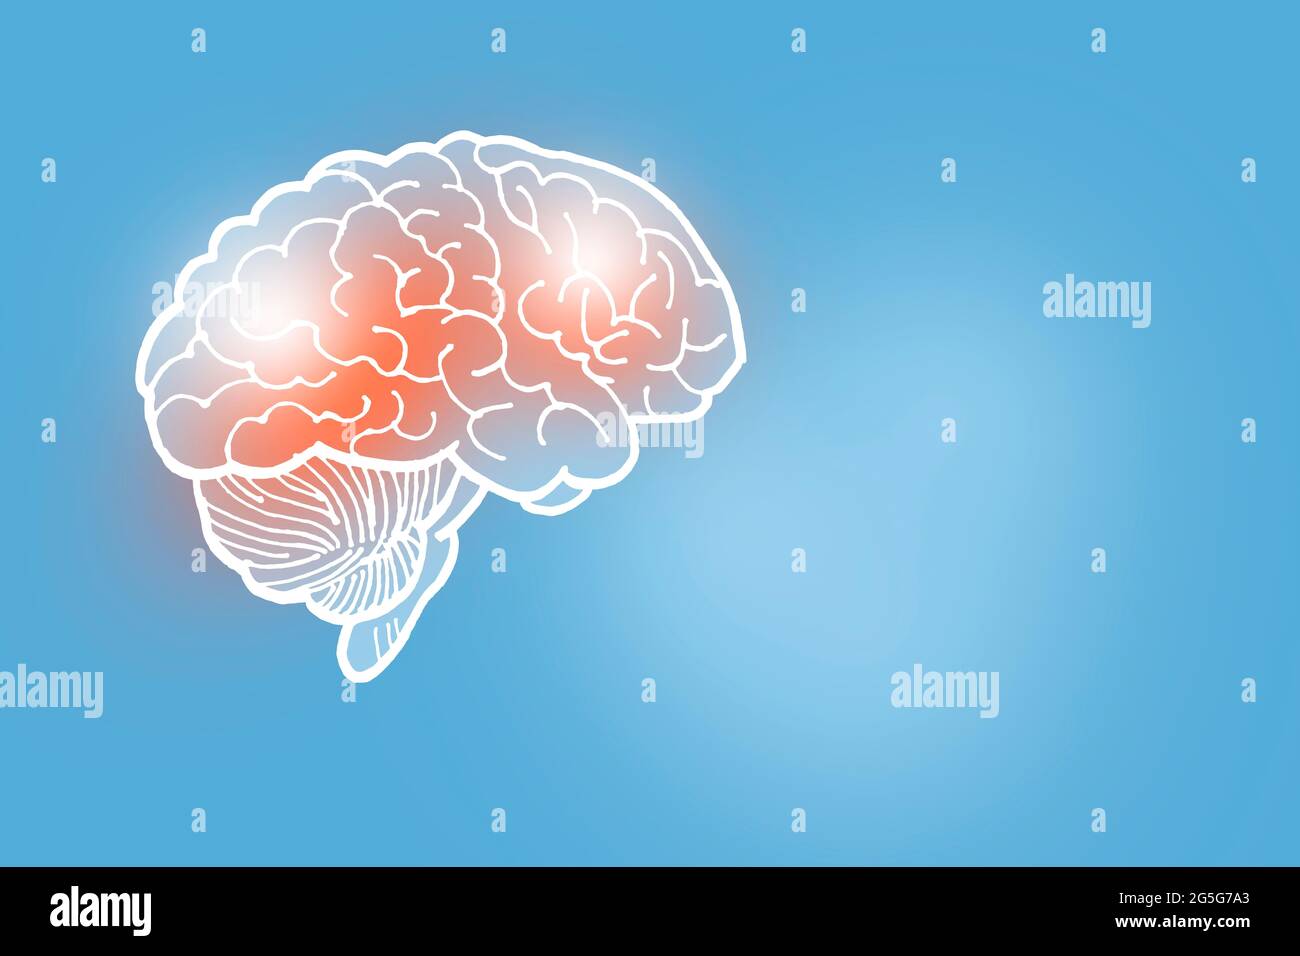 Illustrazione Handrawn del cervello umano su sfondo azzurro. Set medico-scientifico con i principali organi umani con spazio di copia vuoto per il testo Foto Stock